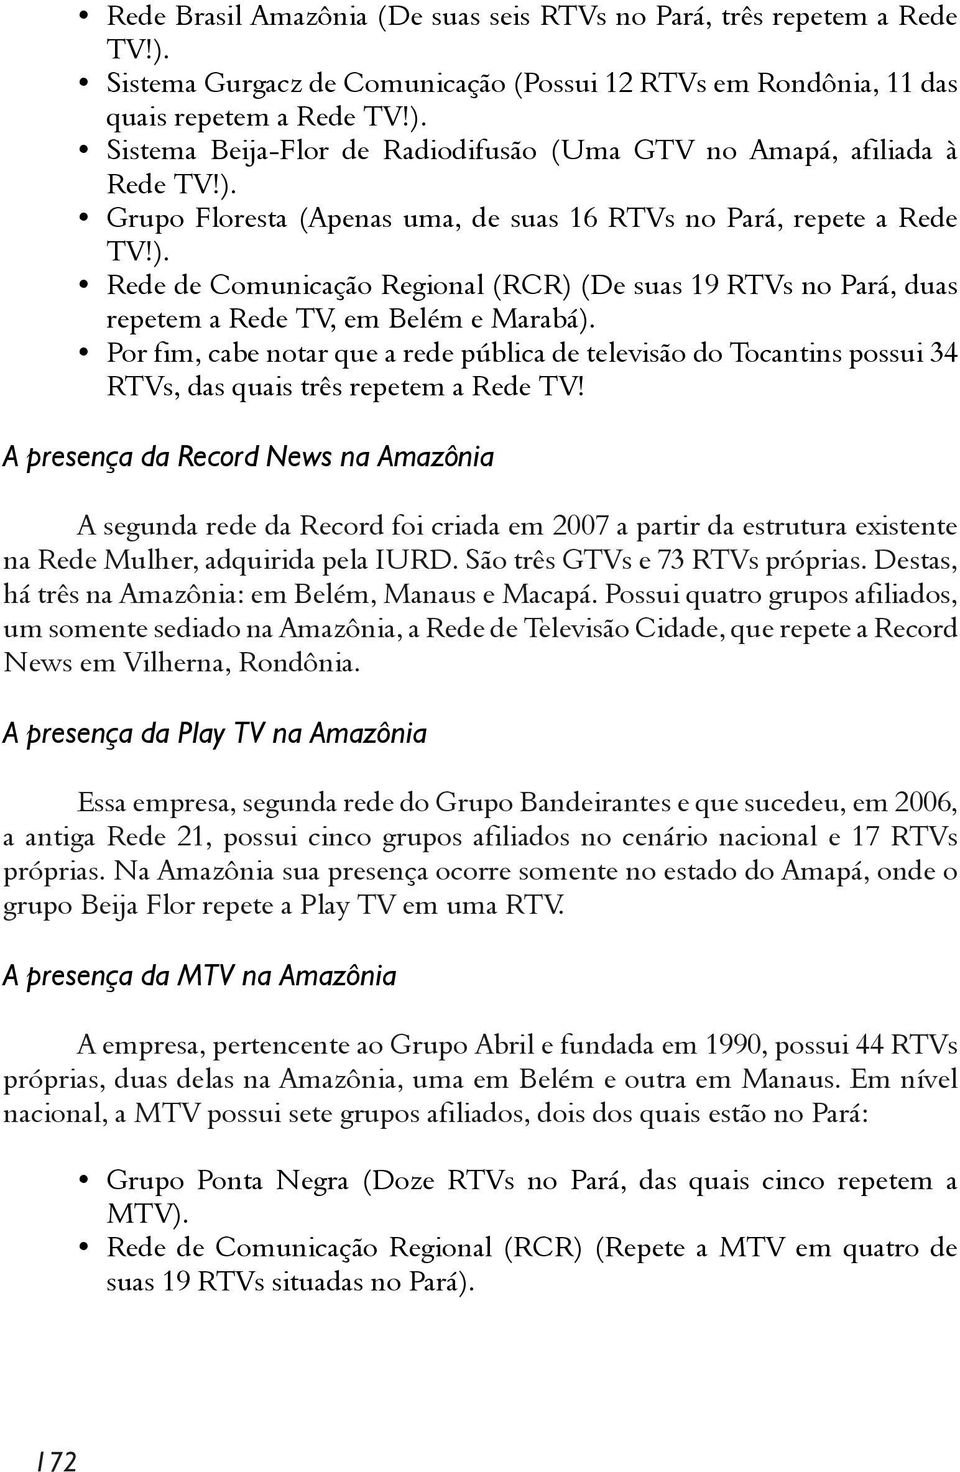 Por fim, cabe notar que a rede pública de televisão do Tocantins possui 34 RTVs, das quais três repetem a Rede TV!